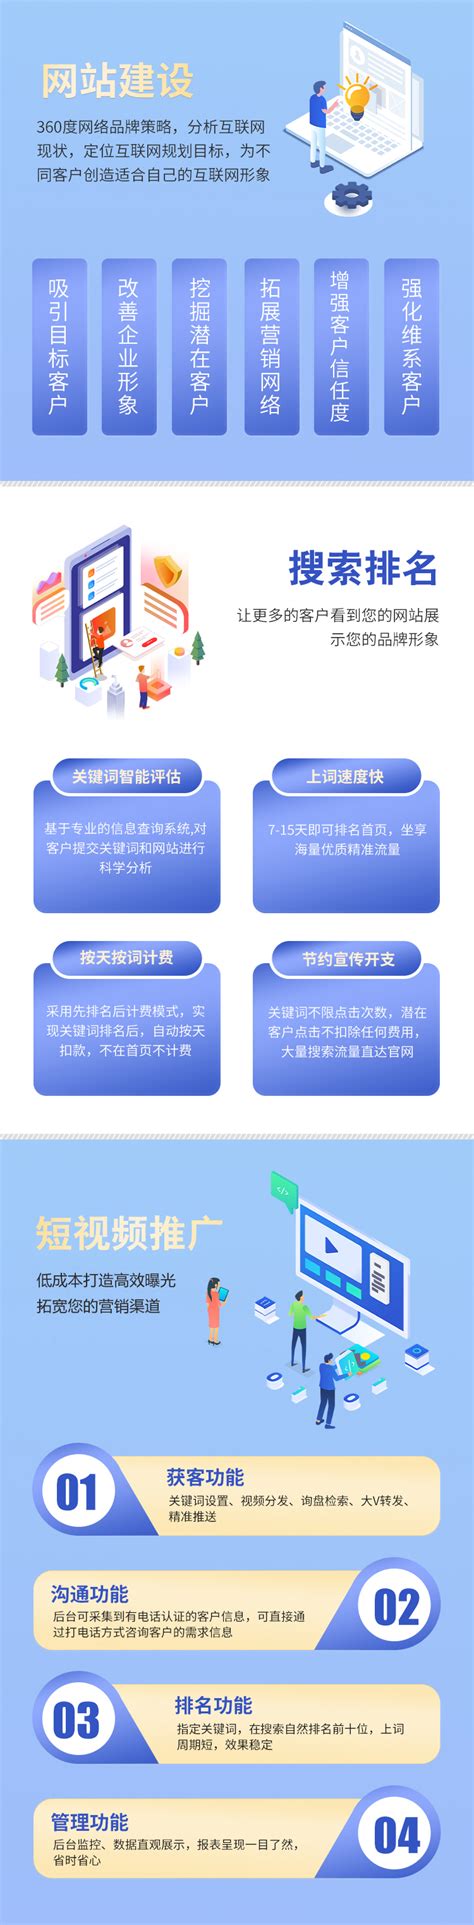 重庆网站建设推广制作公司